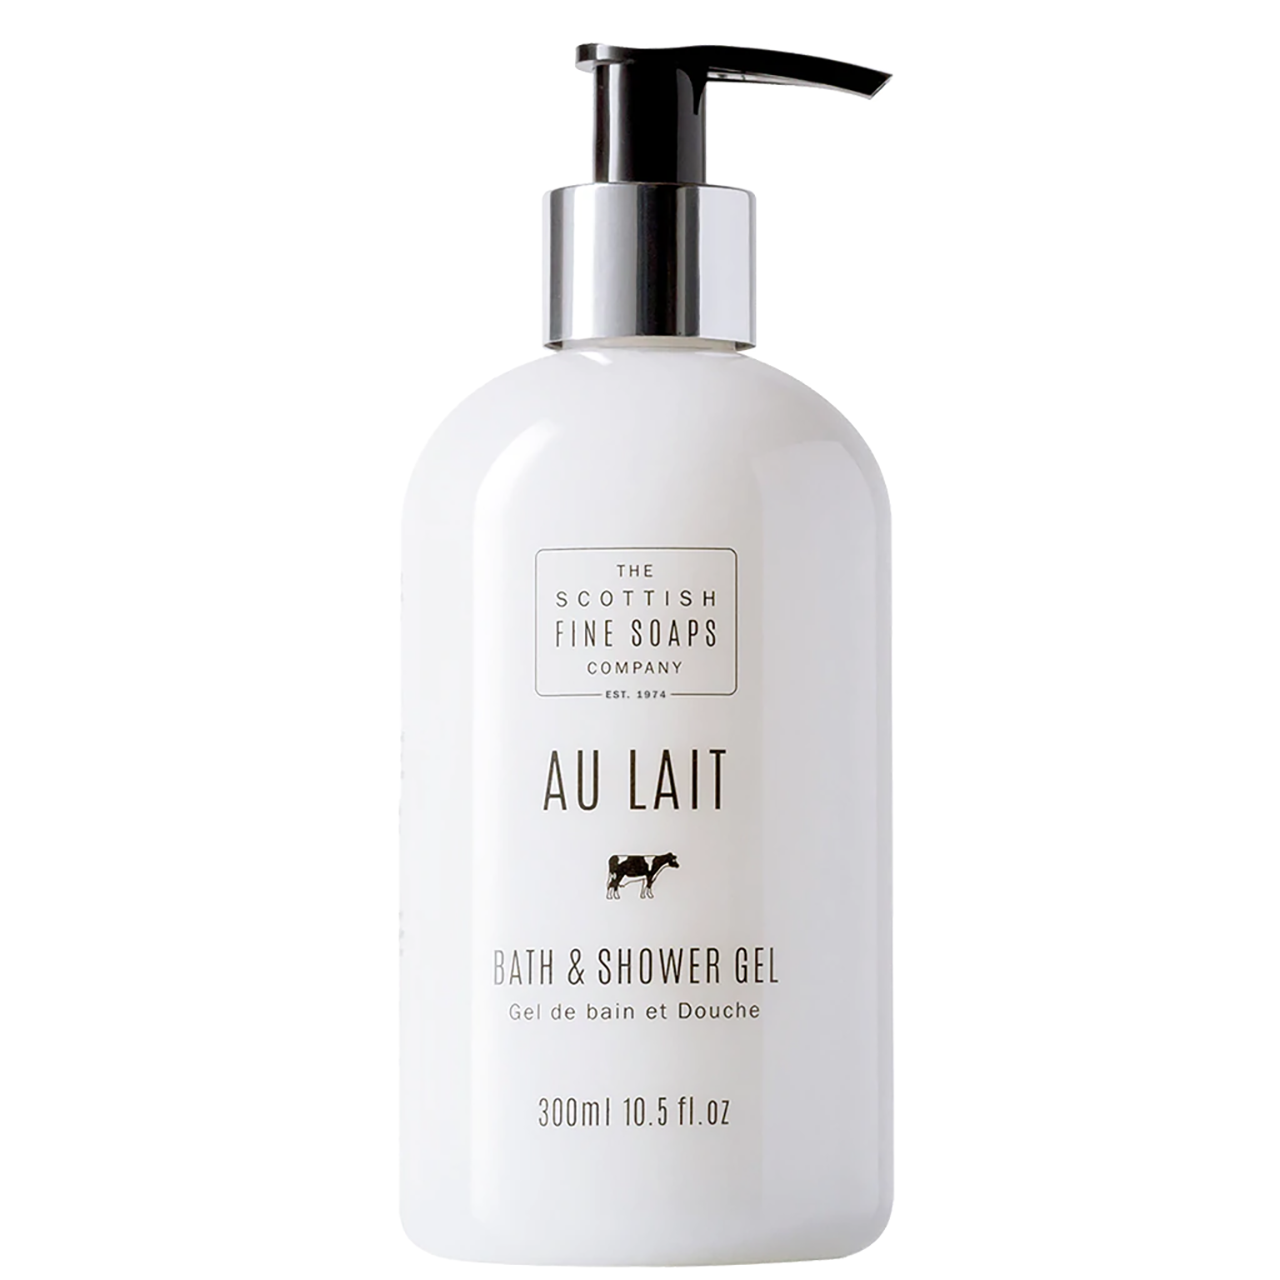 Au Lait Bath & Shower Gel